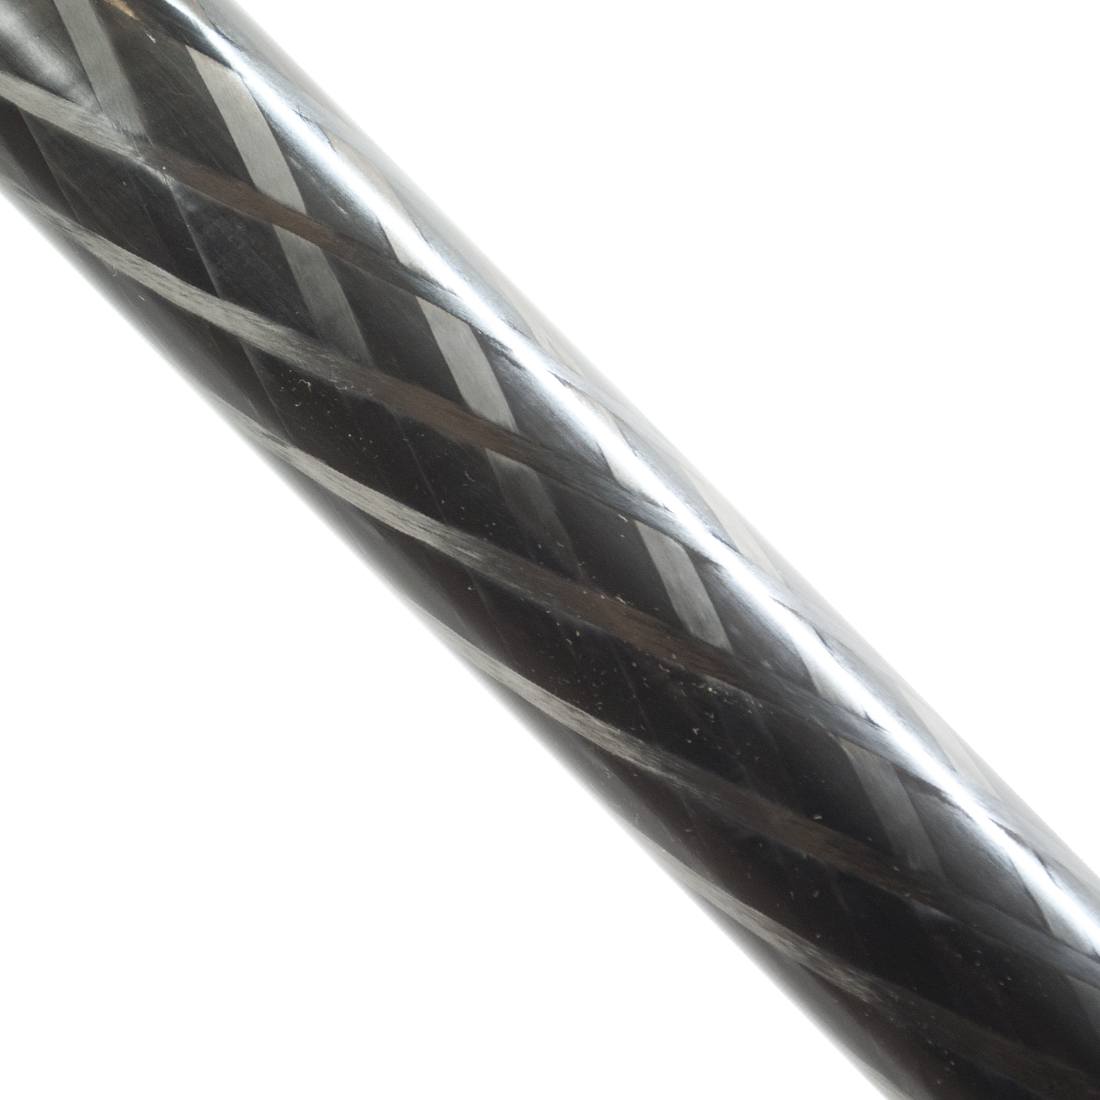 Unger nLite HiMod Carbon Extension Pole - 11 Foot - Carbon Fiber Detailed Close-Up View